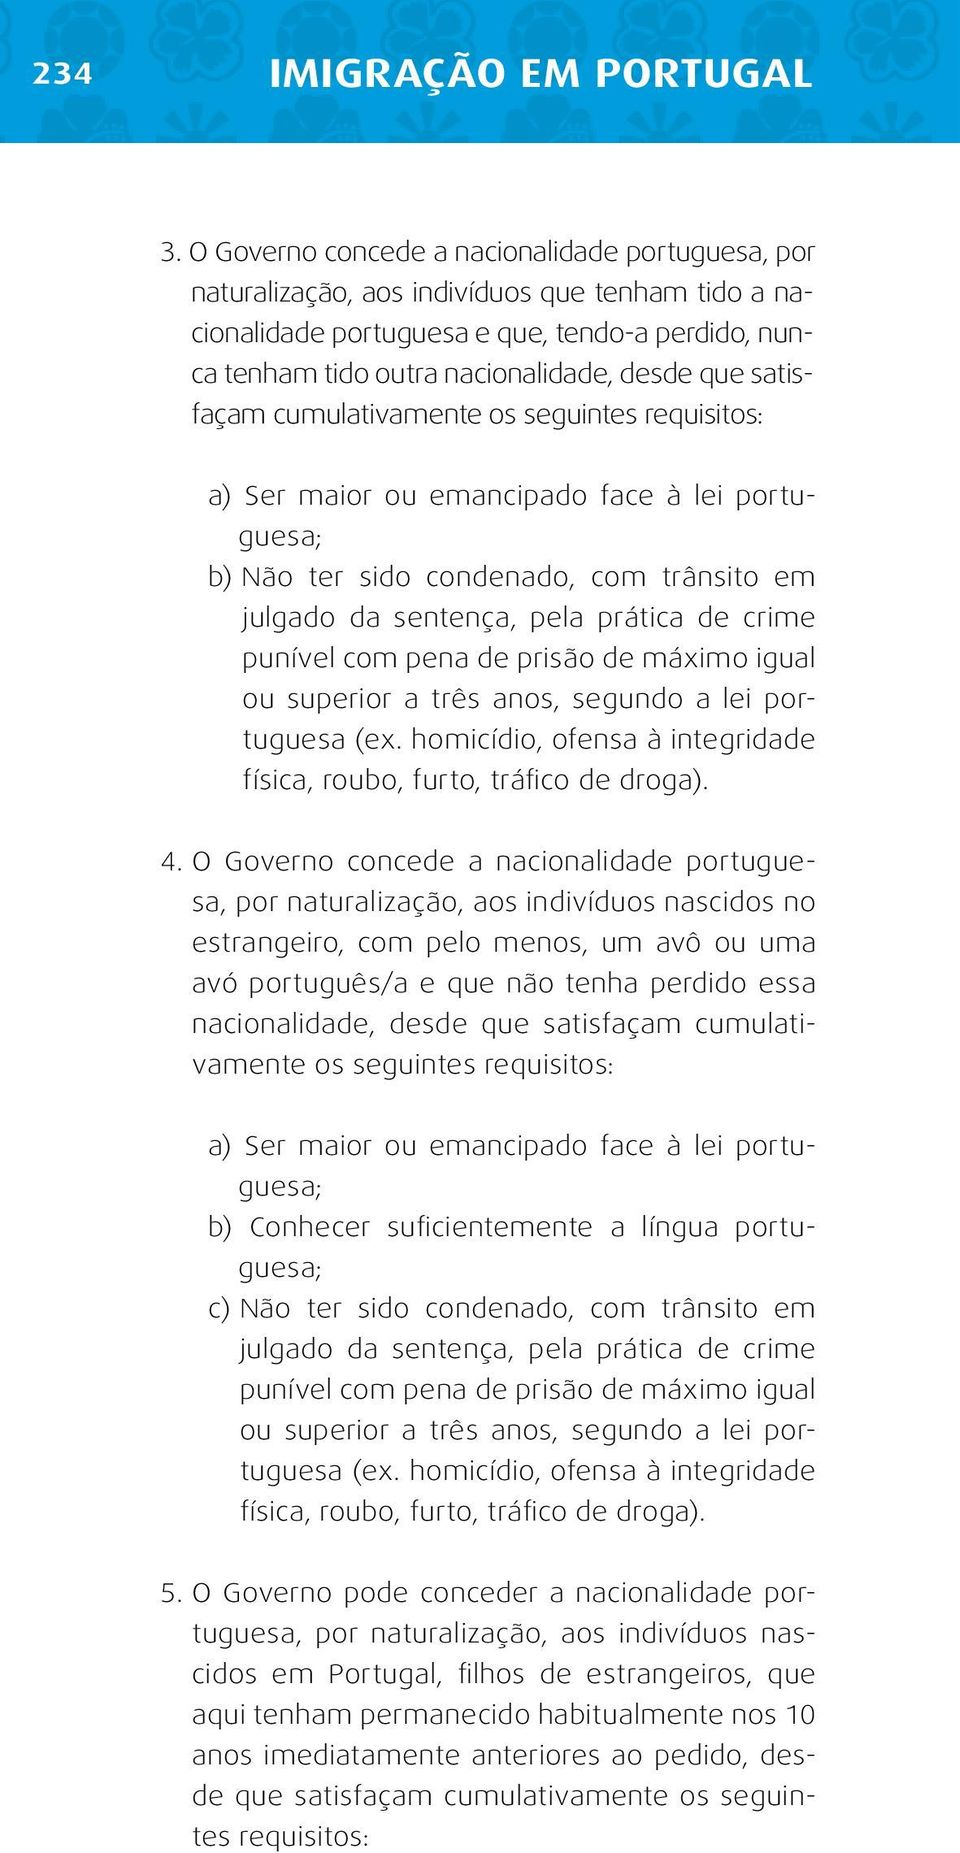 satisfaçam cumulativamente os seguintes requisitos: a) Ser maior ou emancipado face à lei portuguesa; b) Não ter sido condenado, com trânsito em julgado da sentença, pela prática de crime punível com